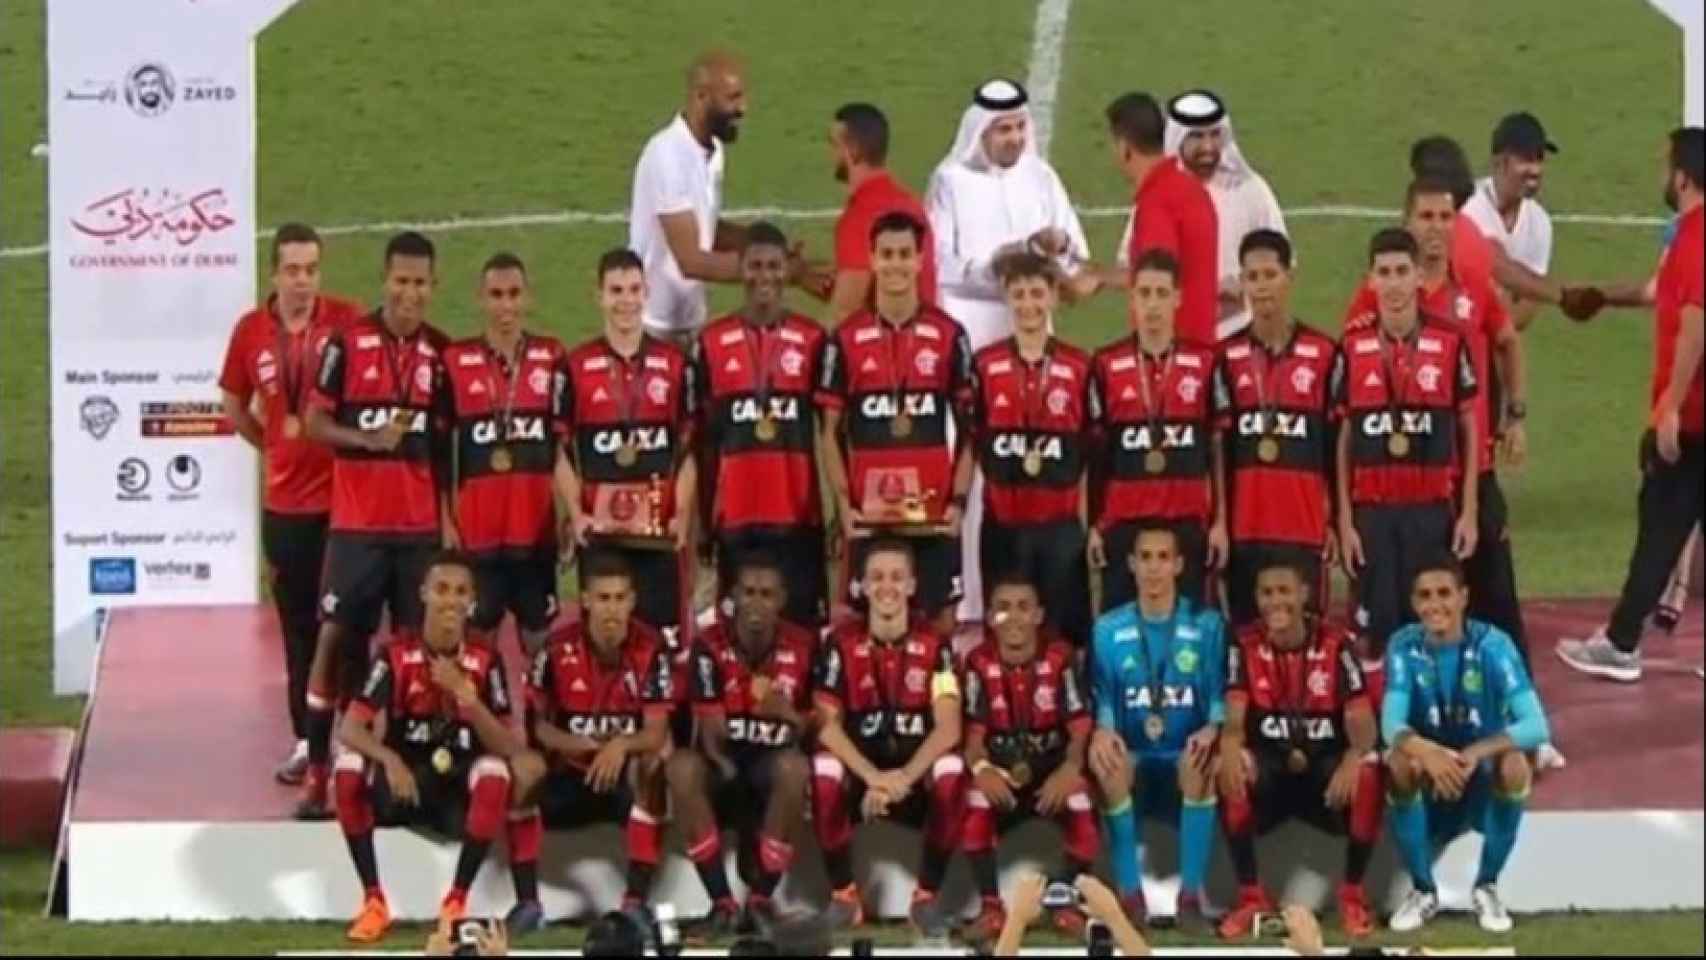 Los jugadores del Flamengo celebran el título. Foto: www.flamengo.com.br